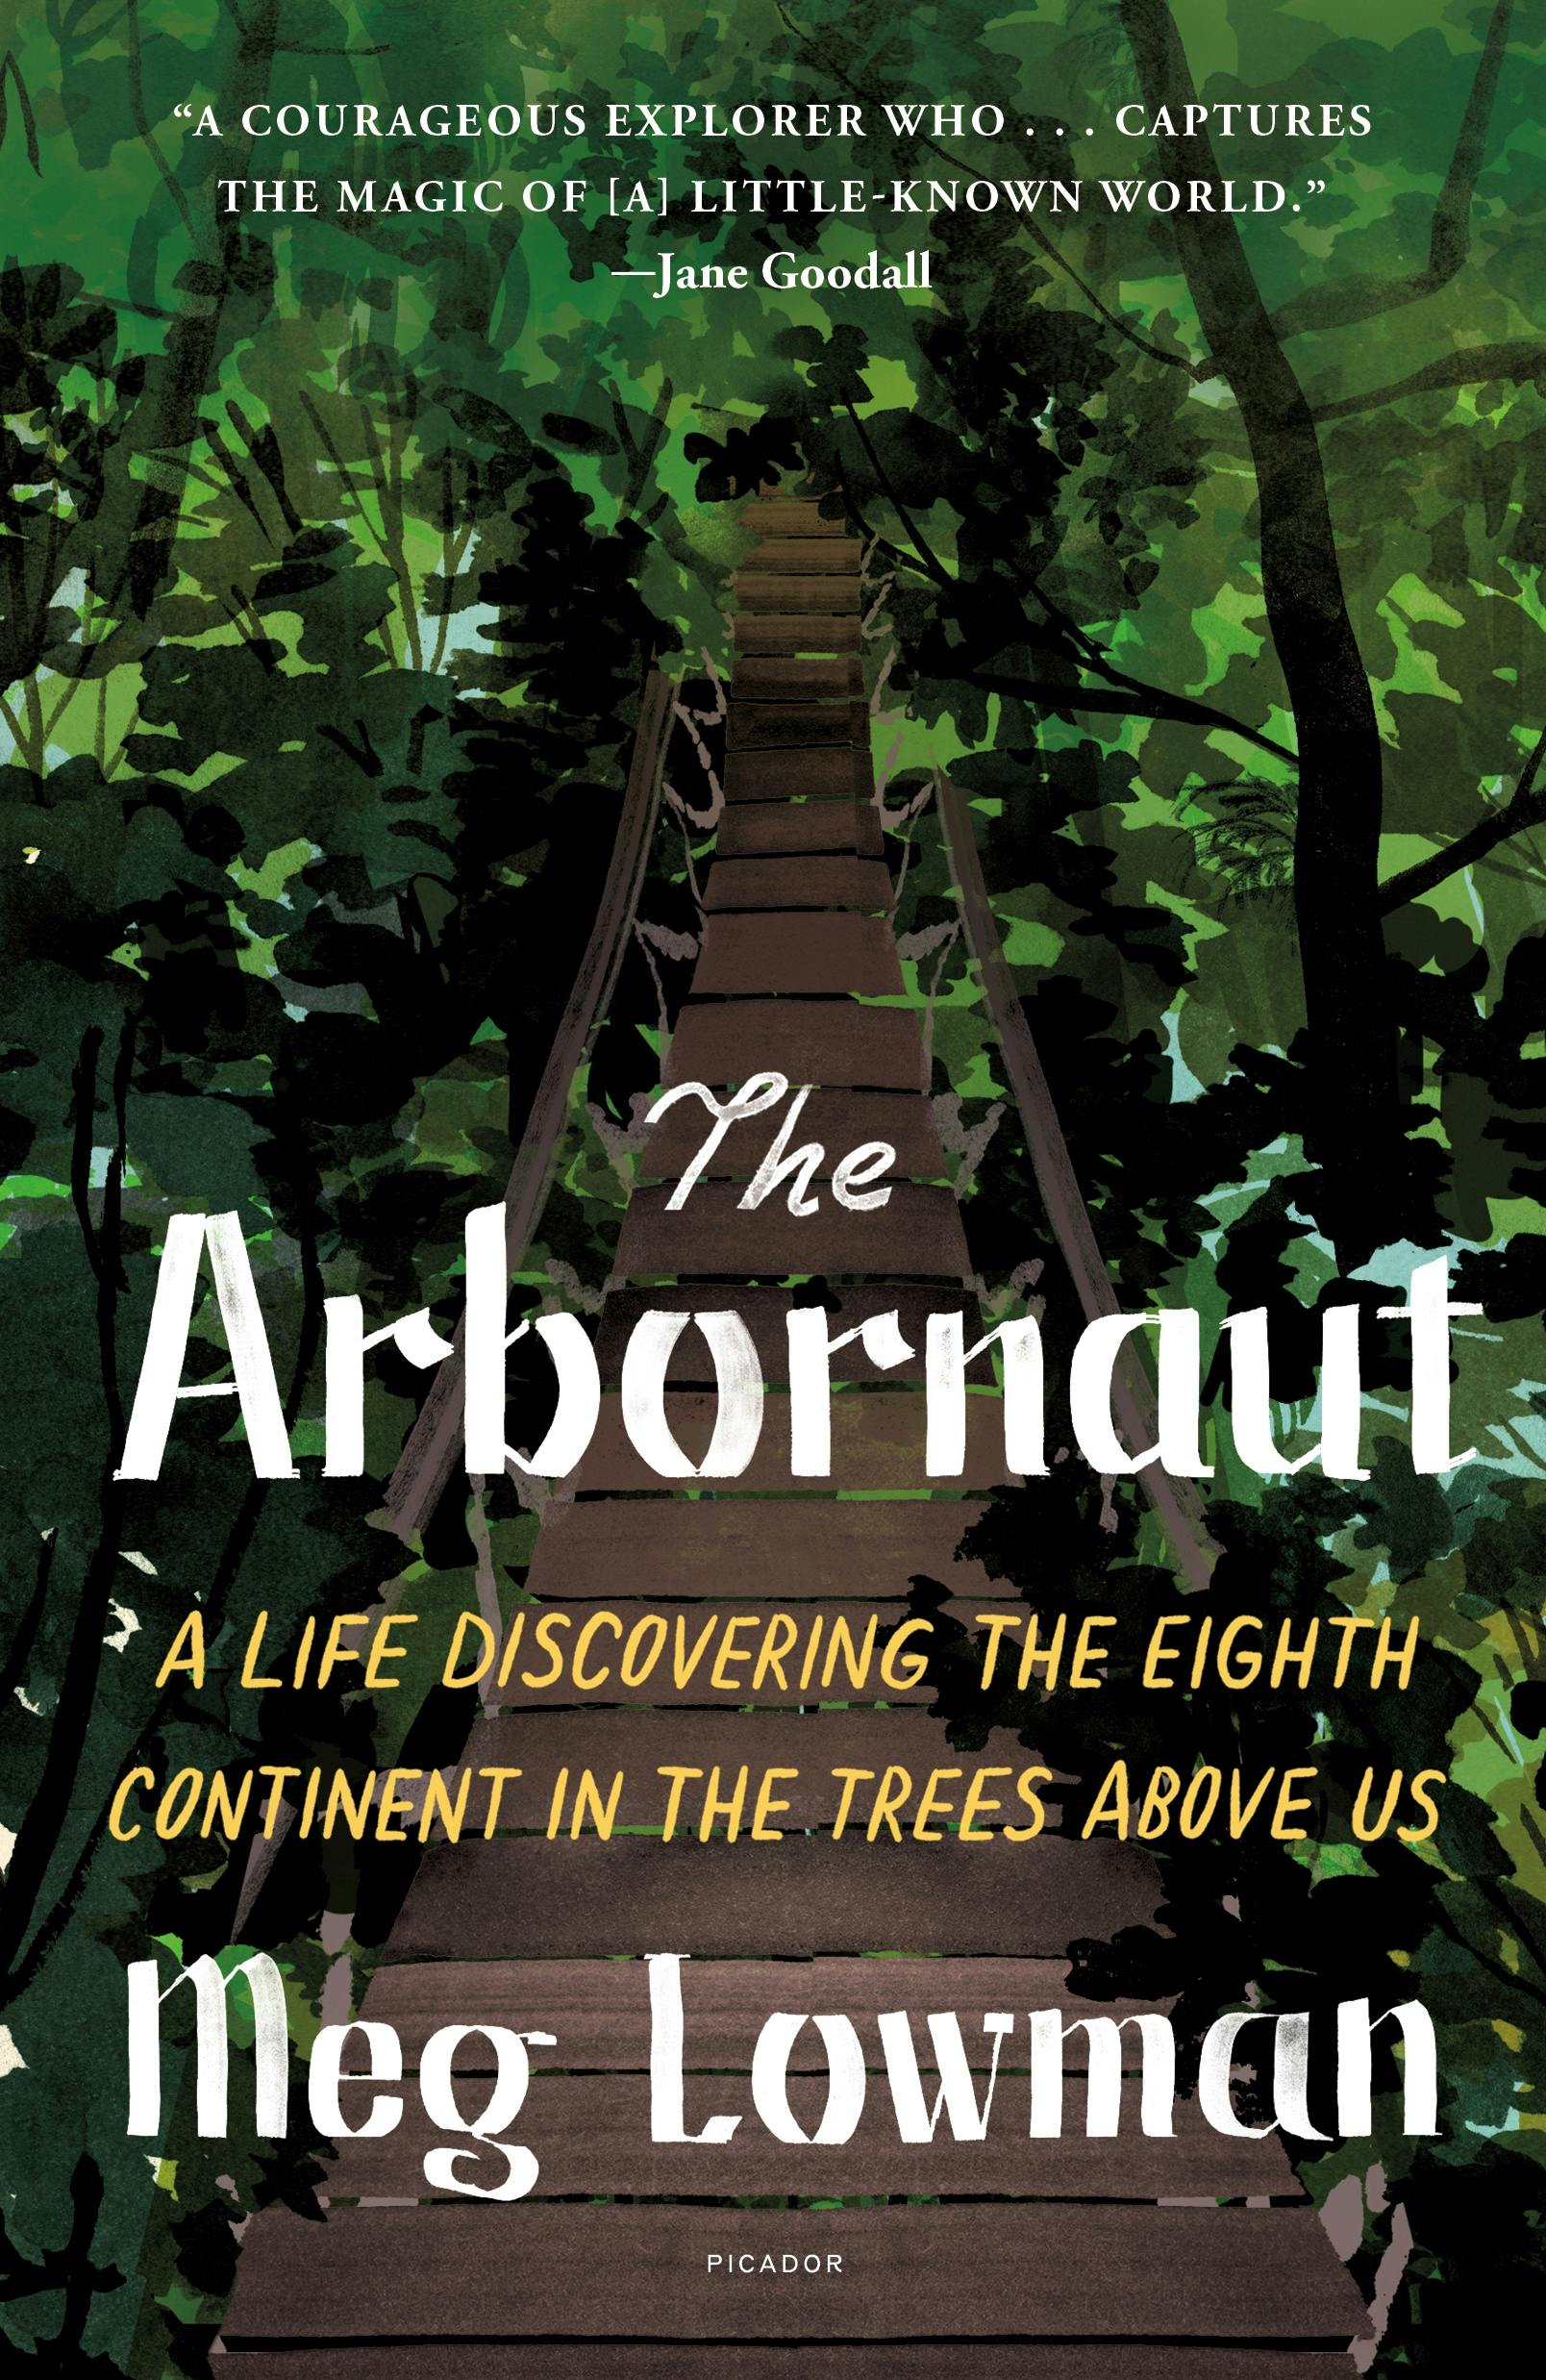 The Arbornaut image